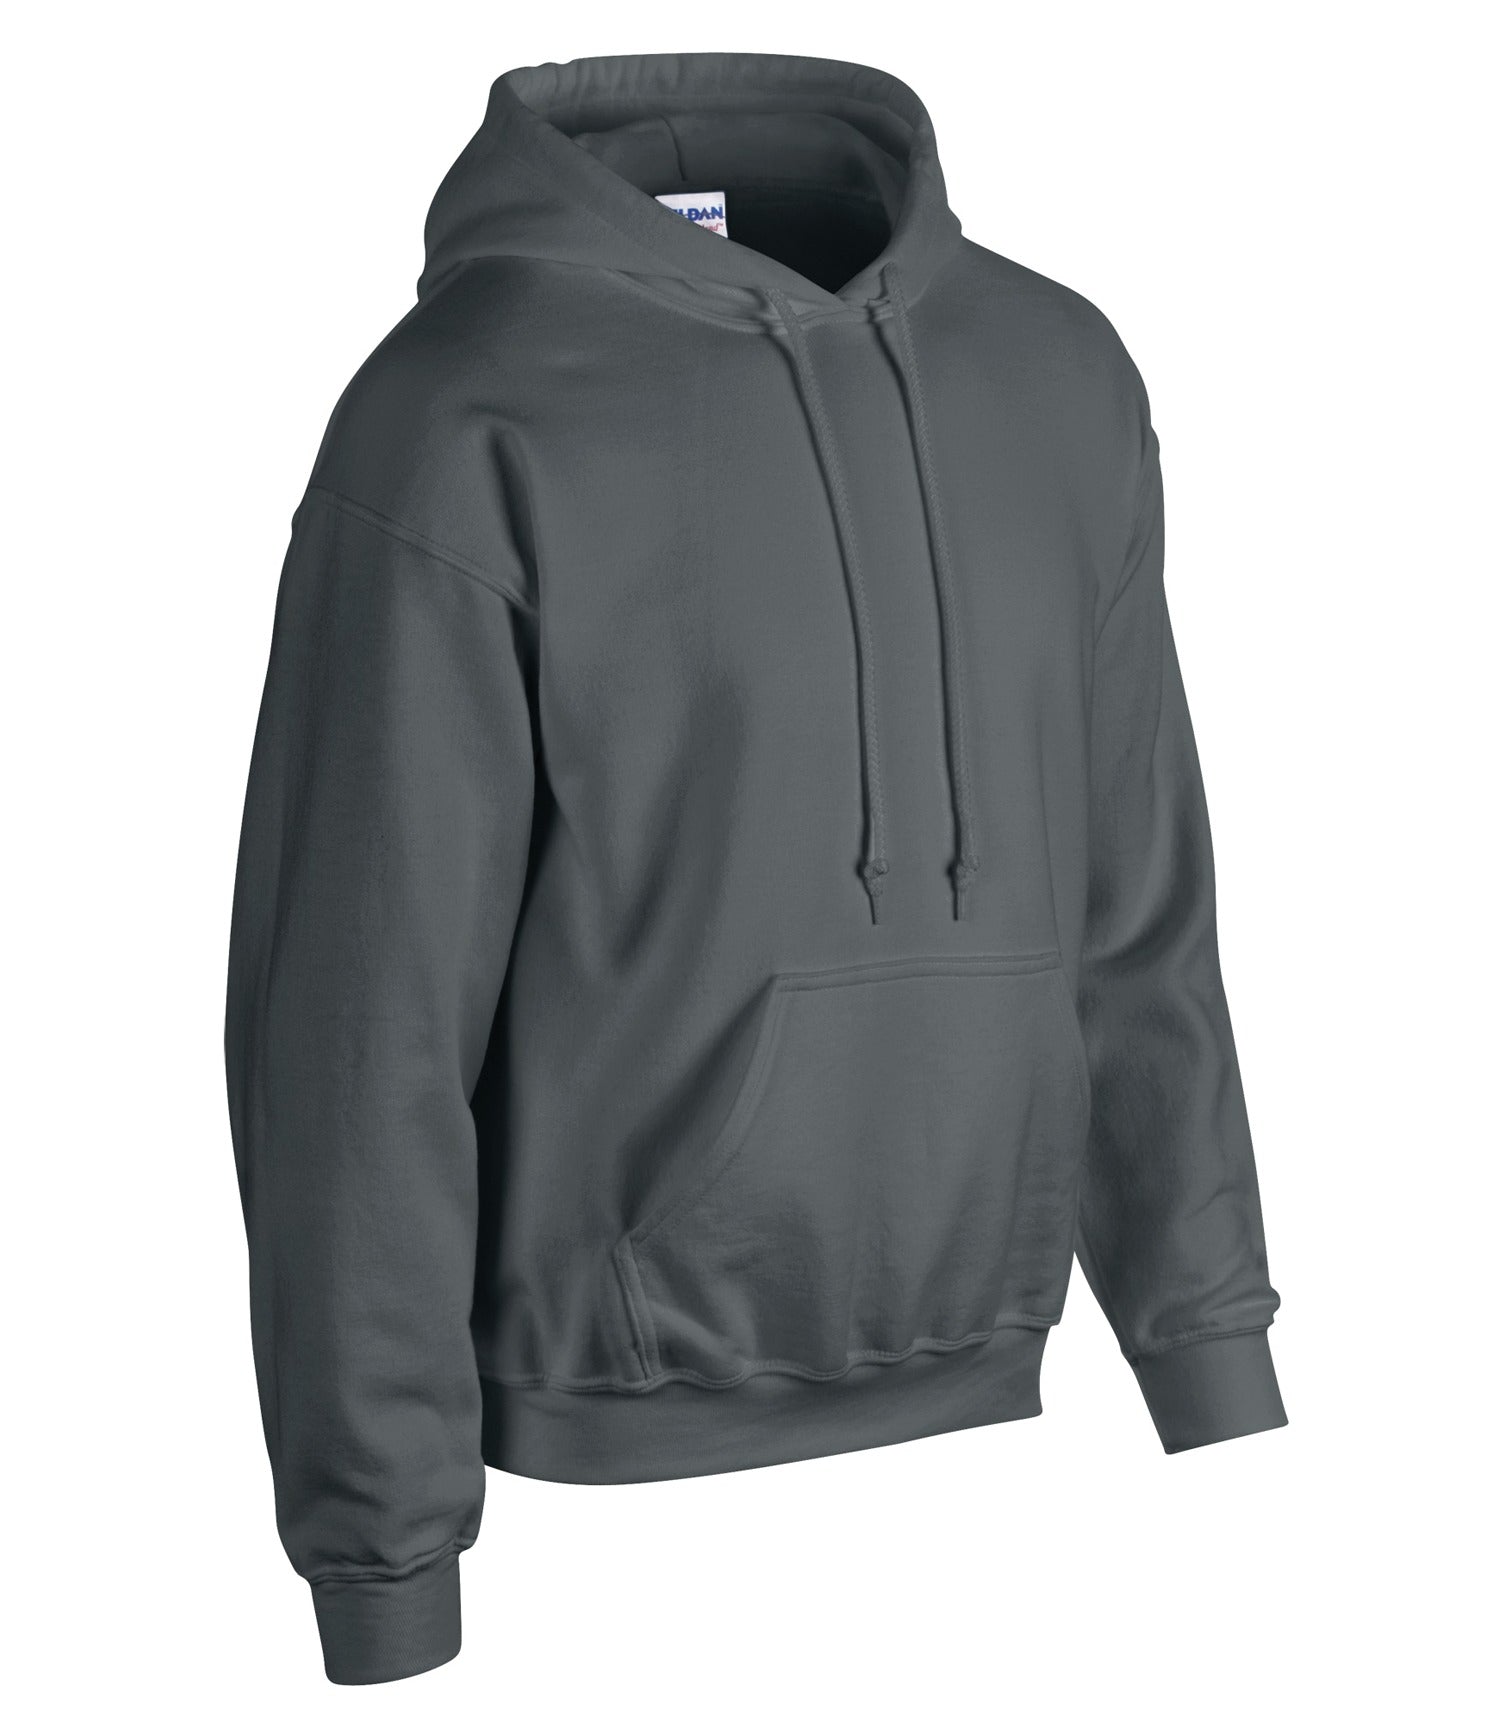 Fleece Jackets / Fleece Sweaters: Shop 64 Brands up to −50